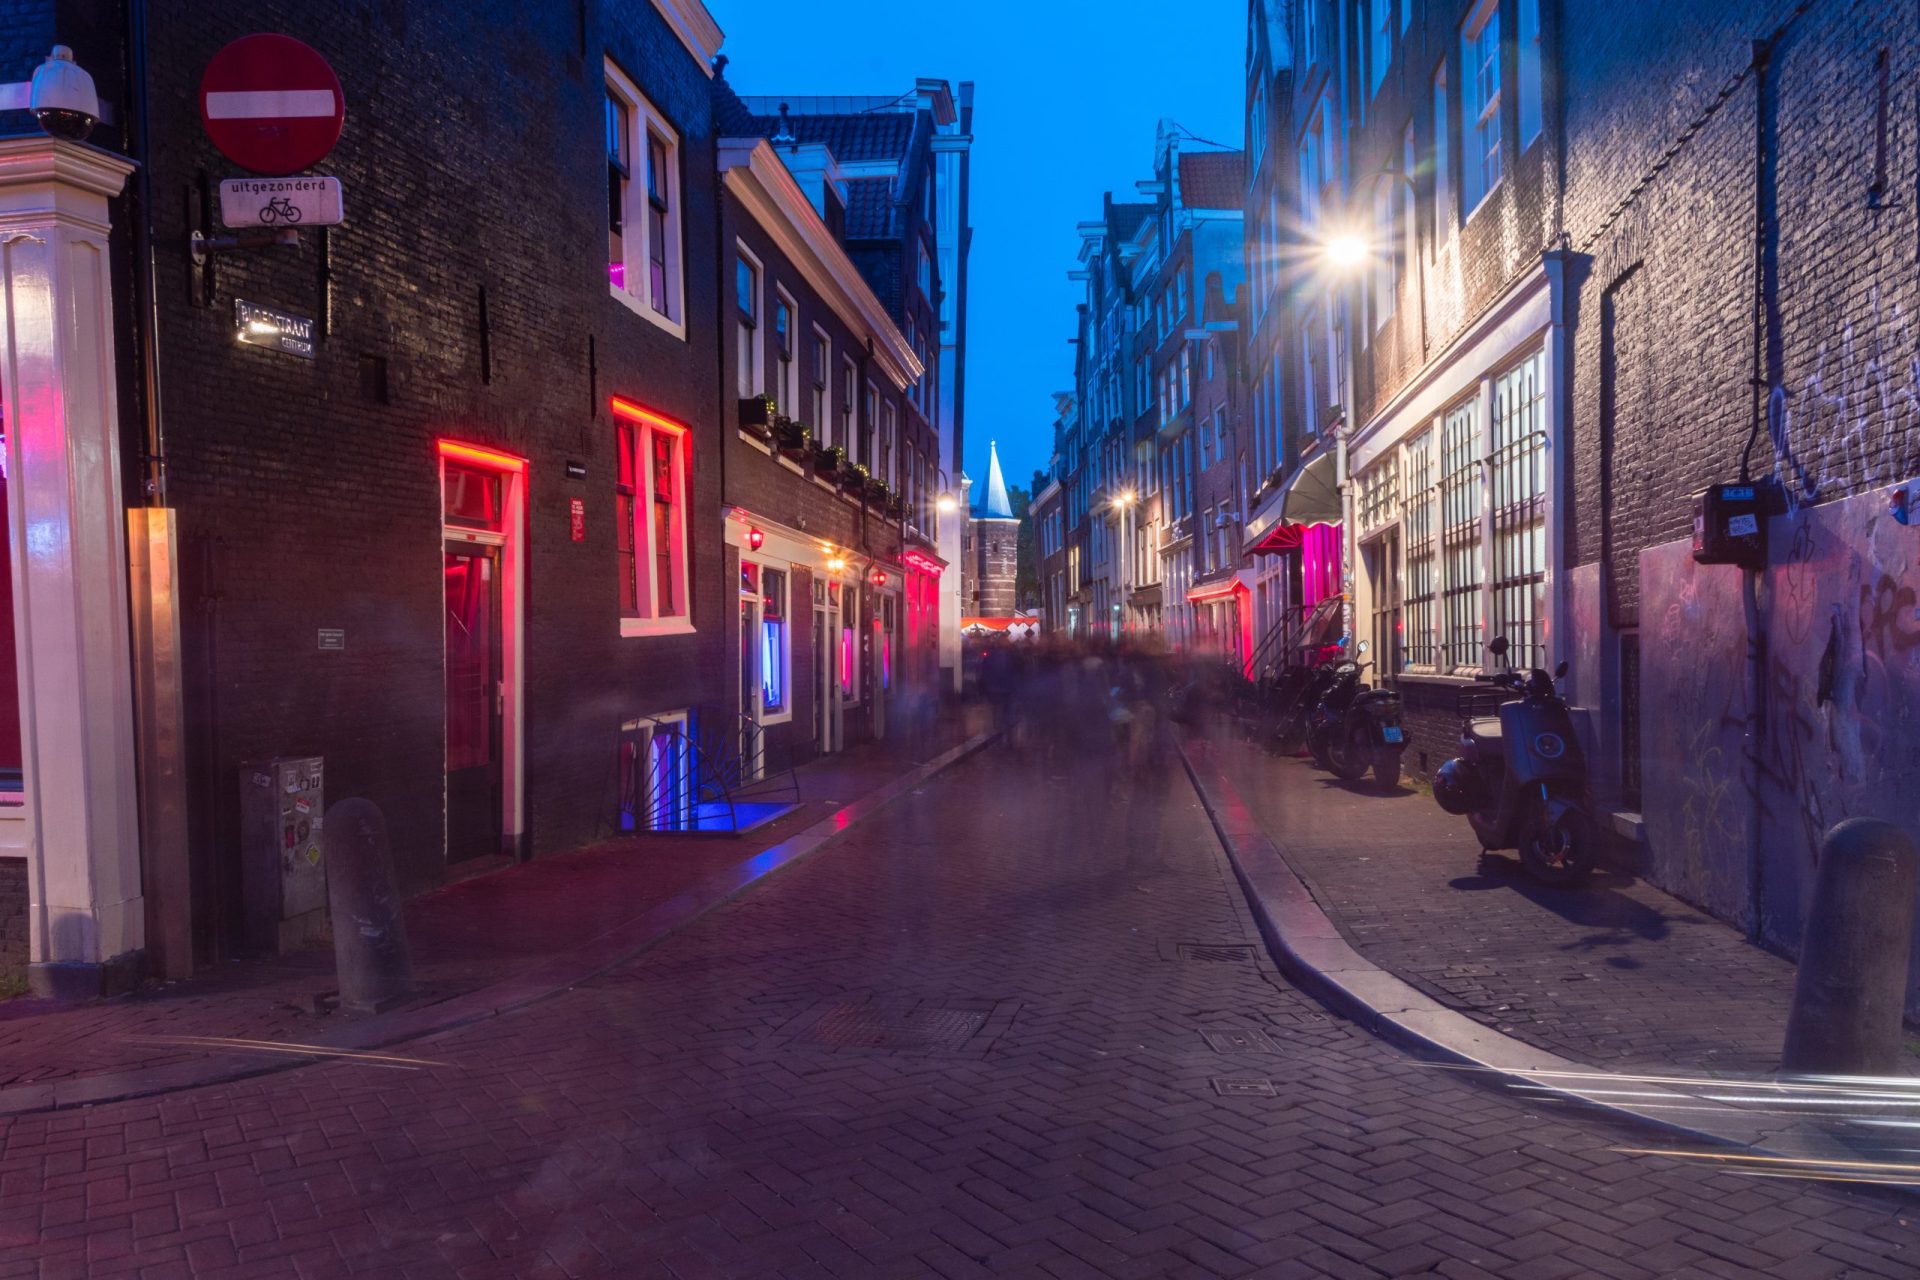 Holanda quer remover prostitutas do centro de Amesterdão para renovar turismo